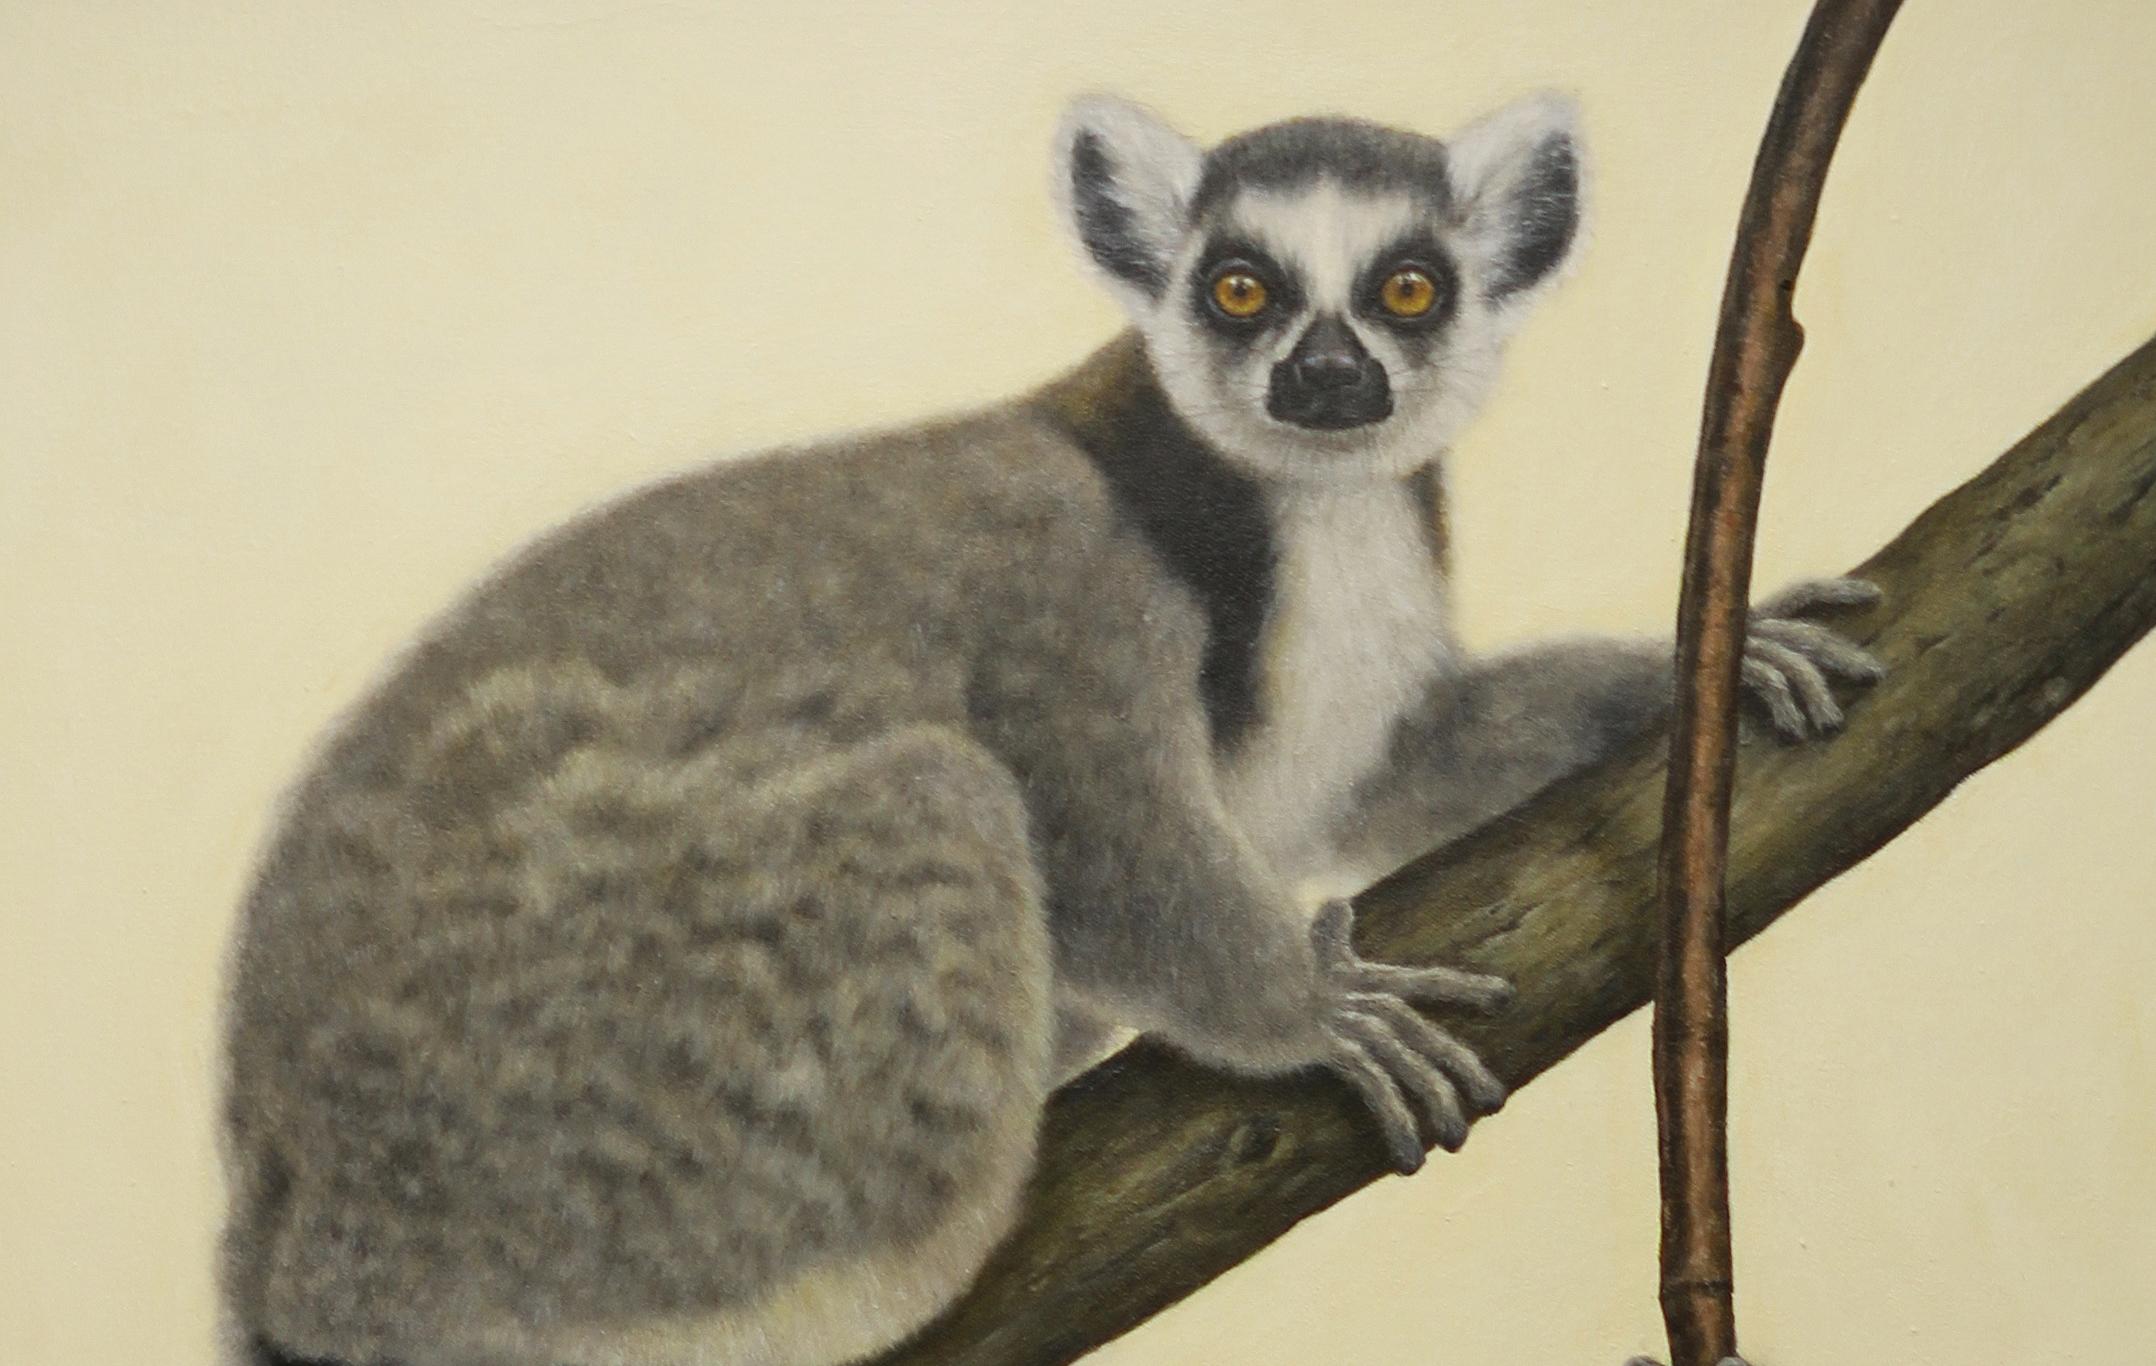 lemur show 2000s